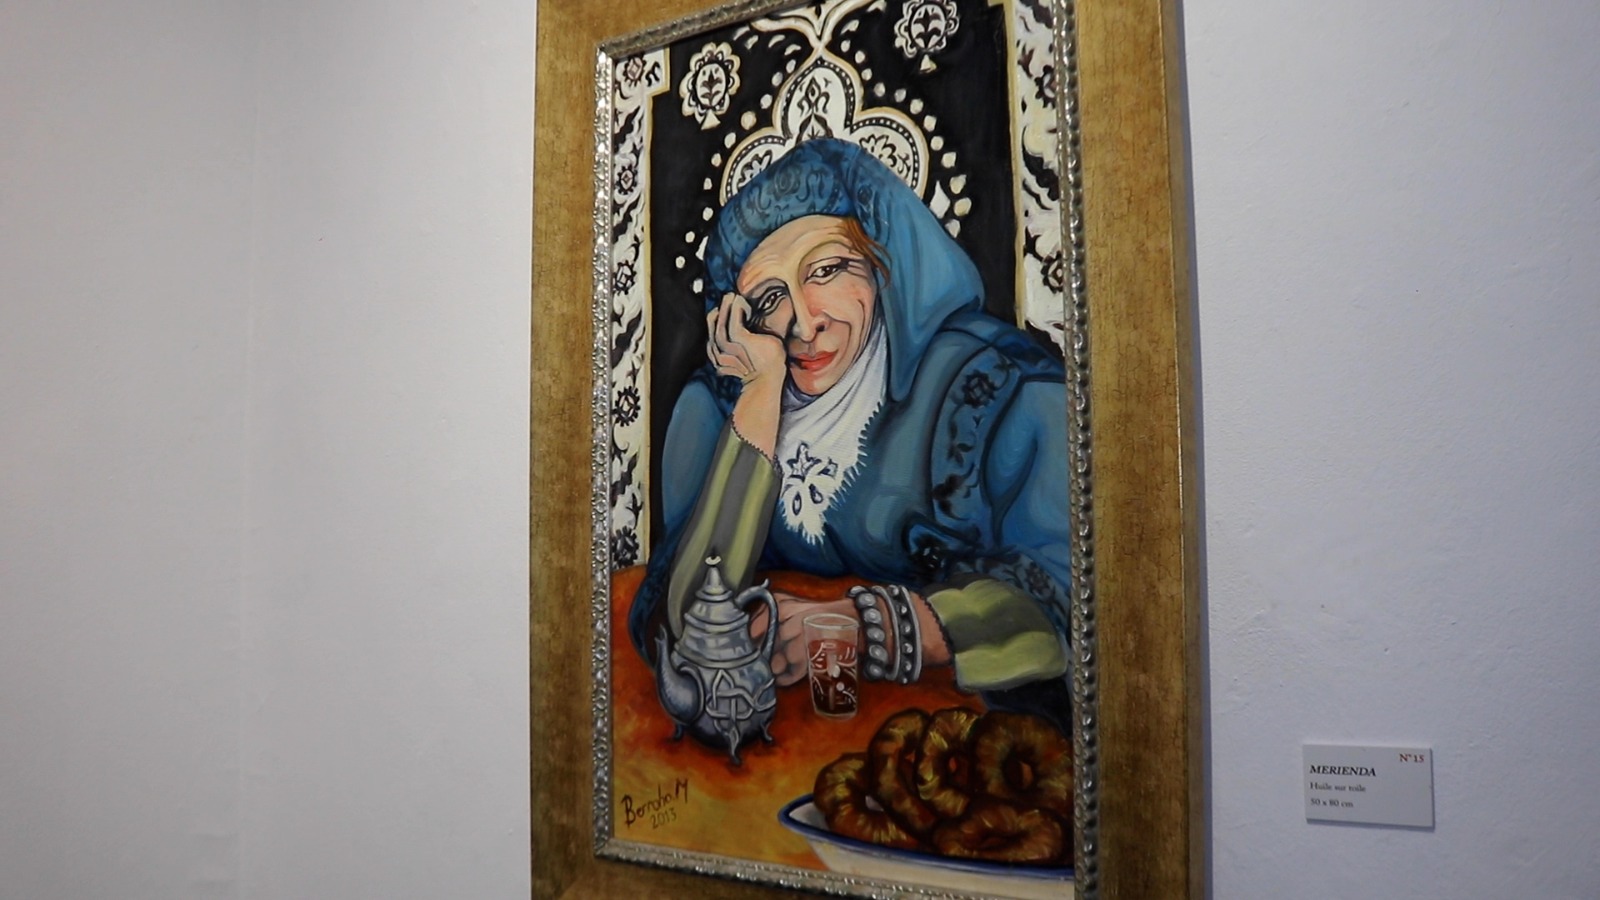 مريم بروحو تنقل معاناة نساء جبال الأطلس في لوحاتها التشكيلية